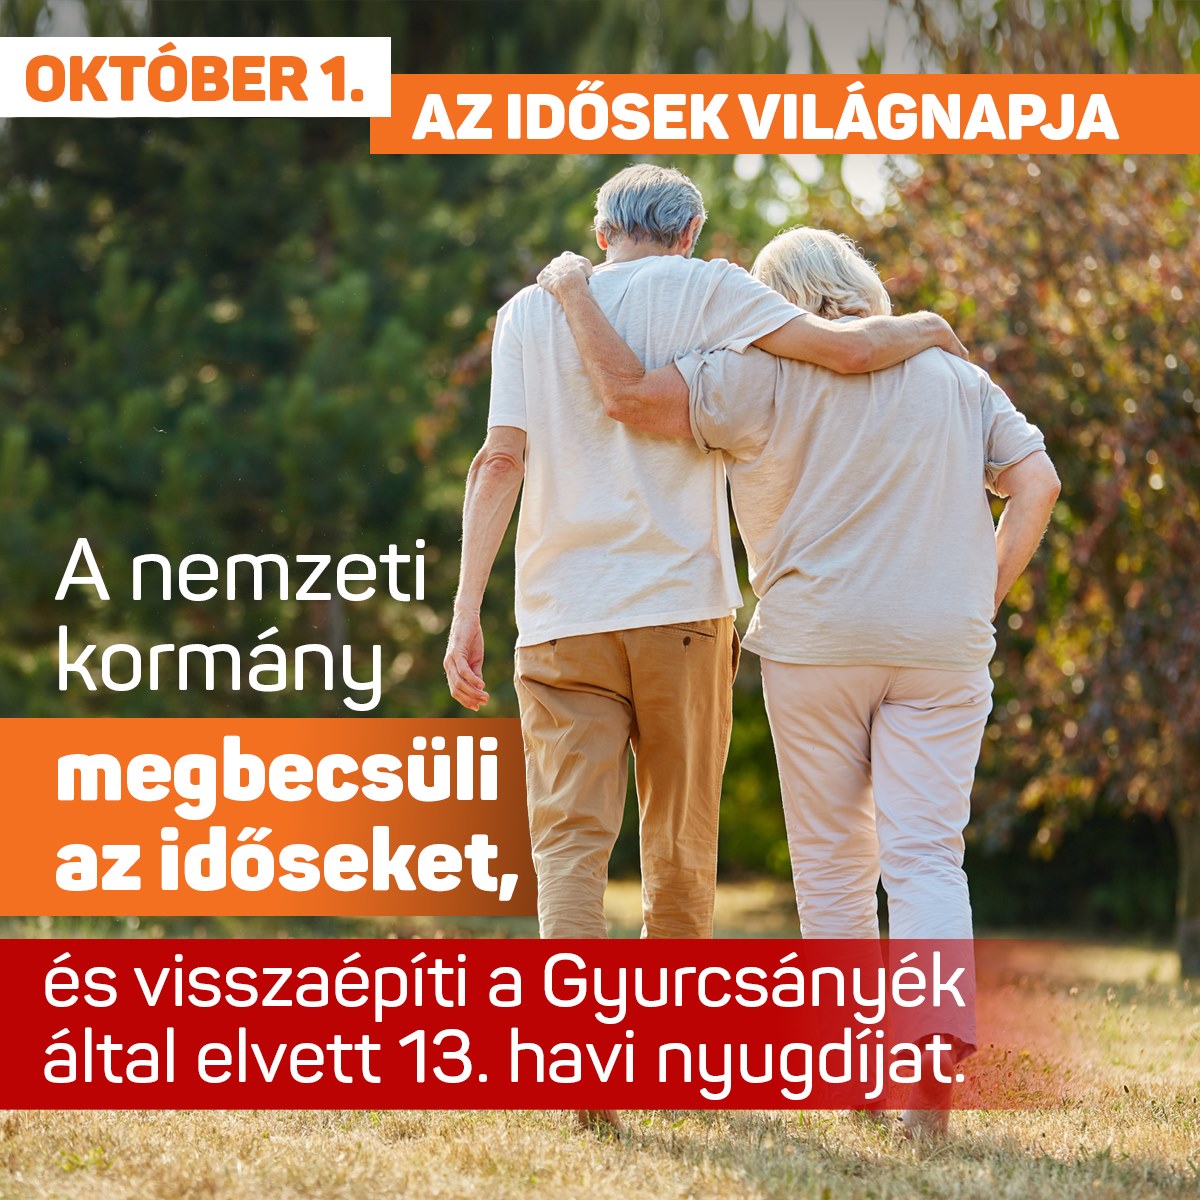 Ma van az idősek világnapja. A nemzeti kormány megbecsüli az időseket, és visszaépíti a Gyurcsányék által elvett 13. havi nyugdíjat.